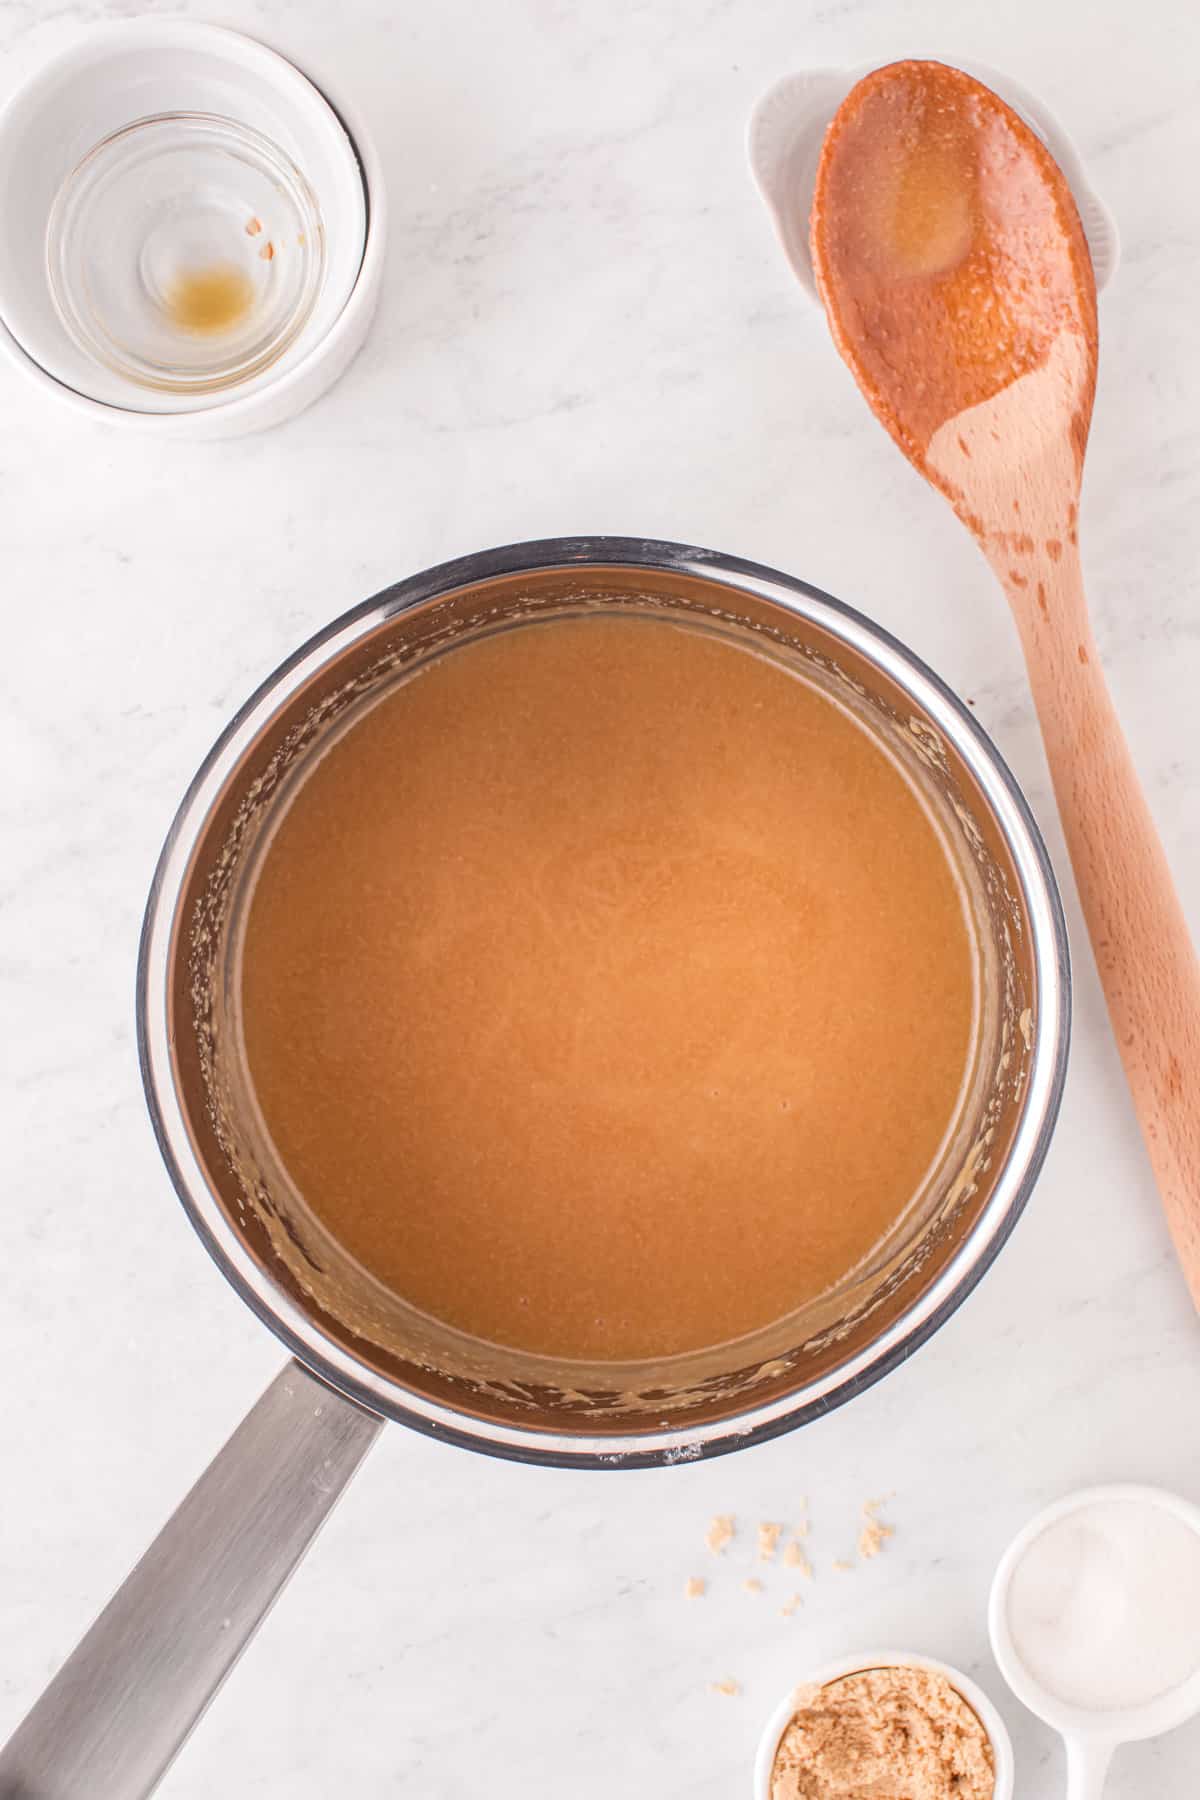 Saucepan with smooth caramel sauce.